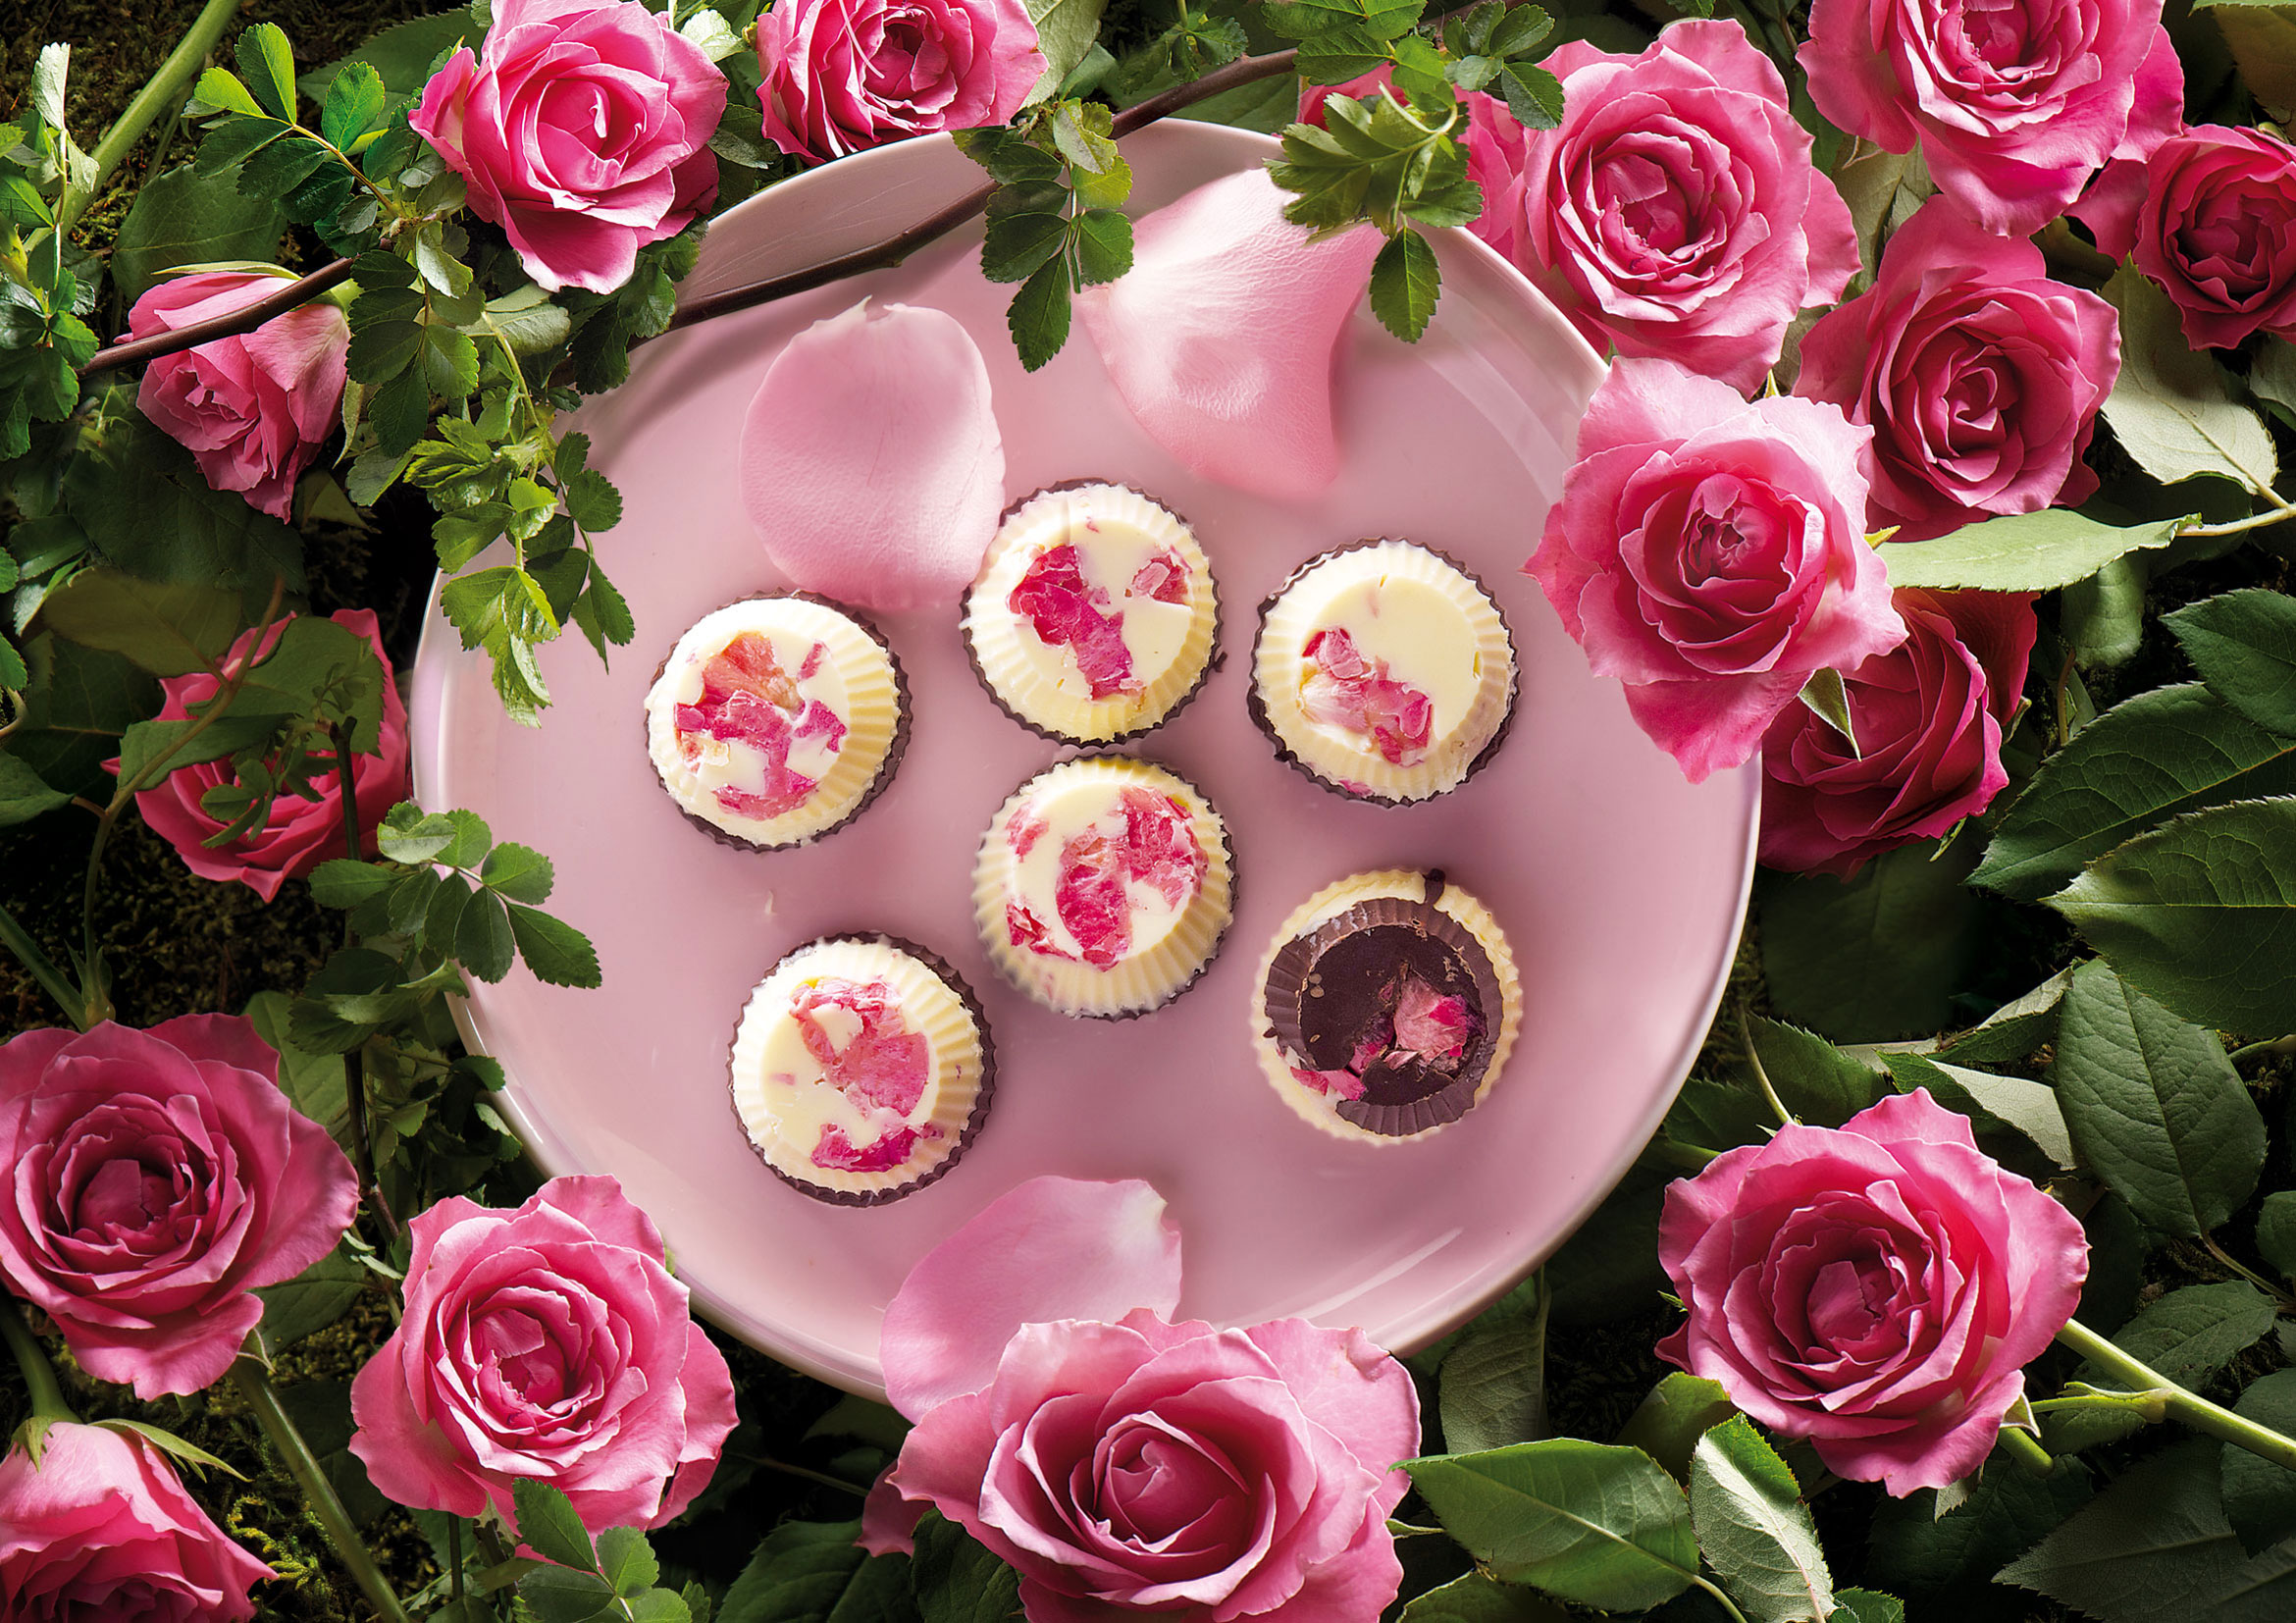 Zdjęcie z ciasteczkami z płatkami róż w scenerii róż.